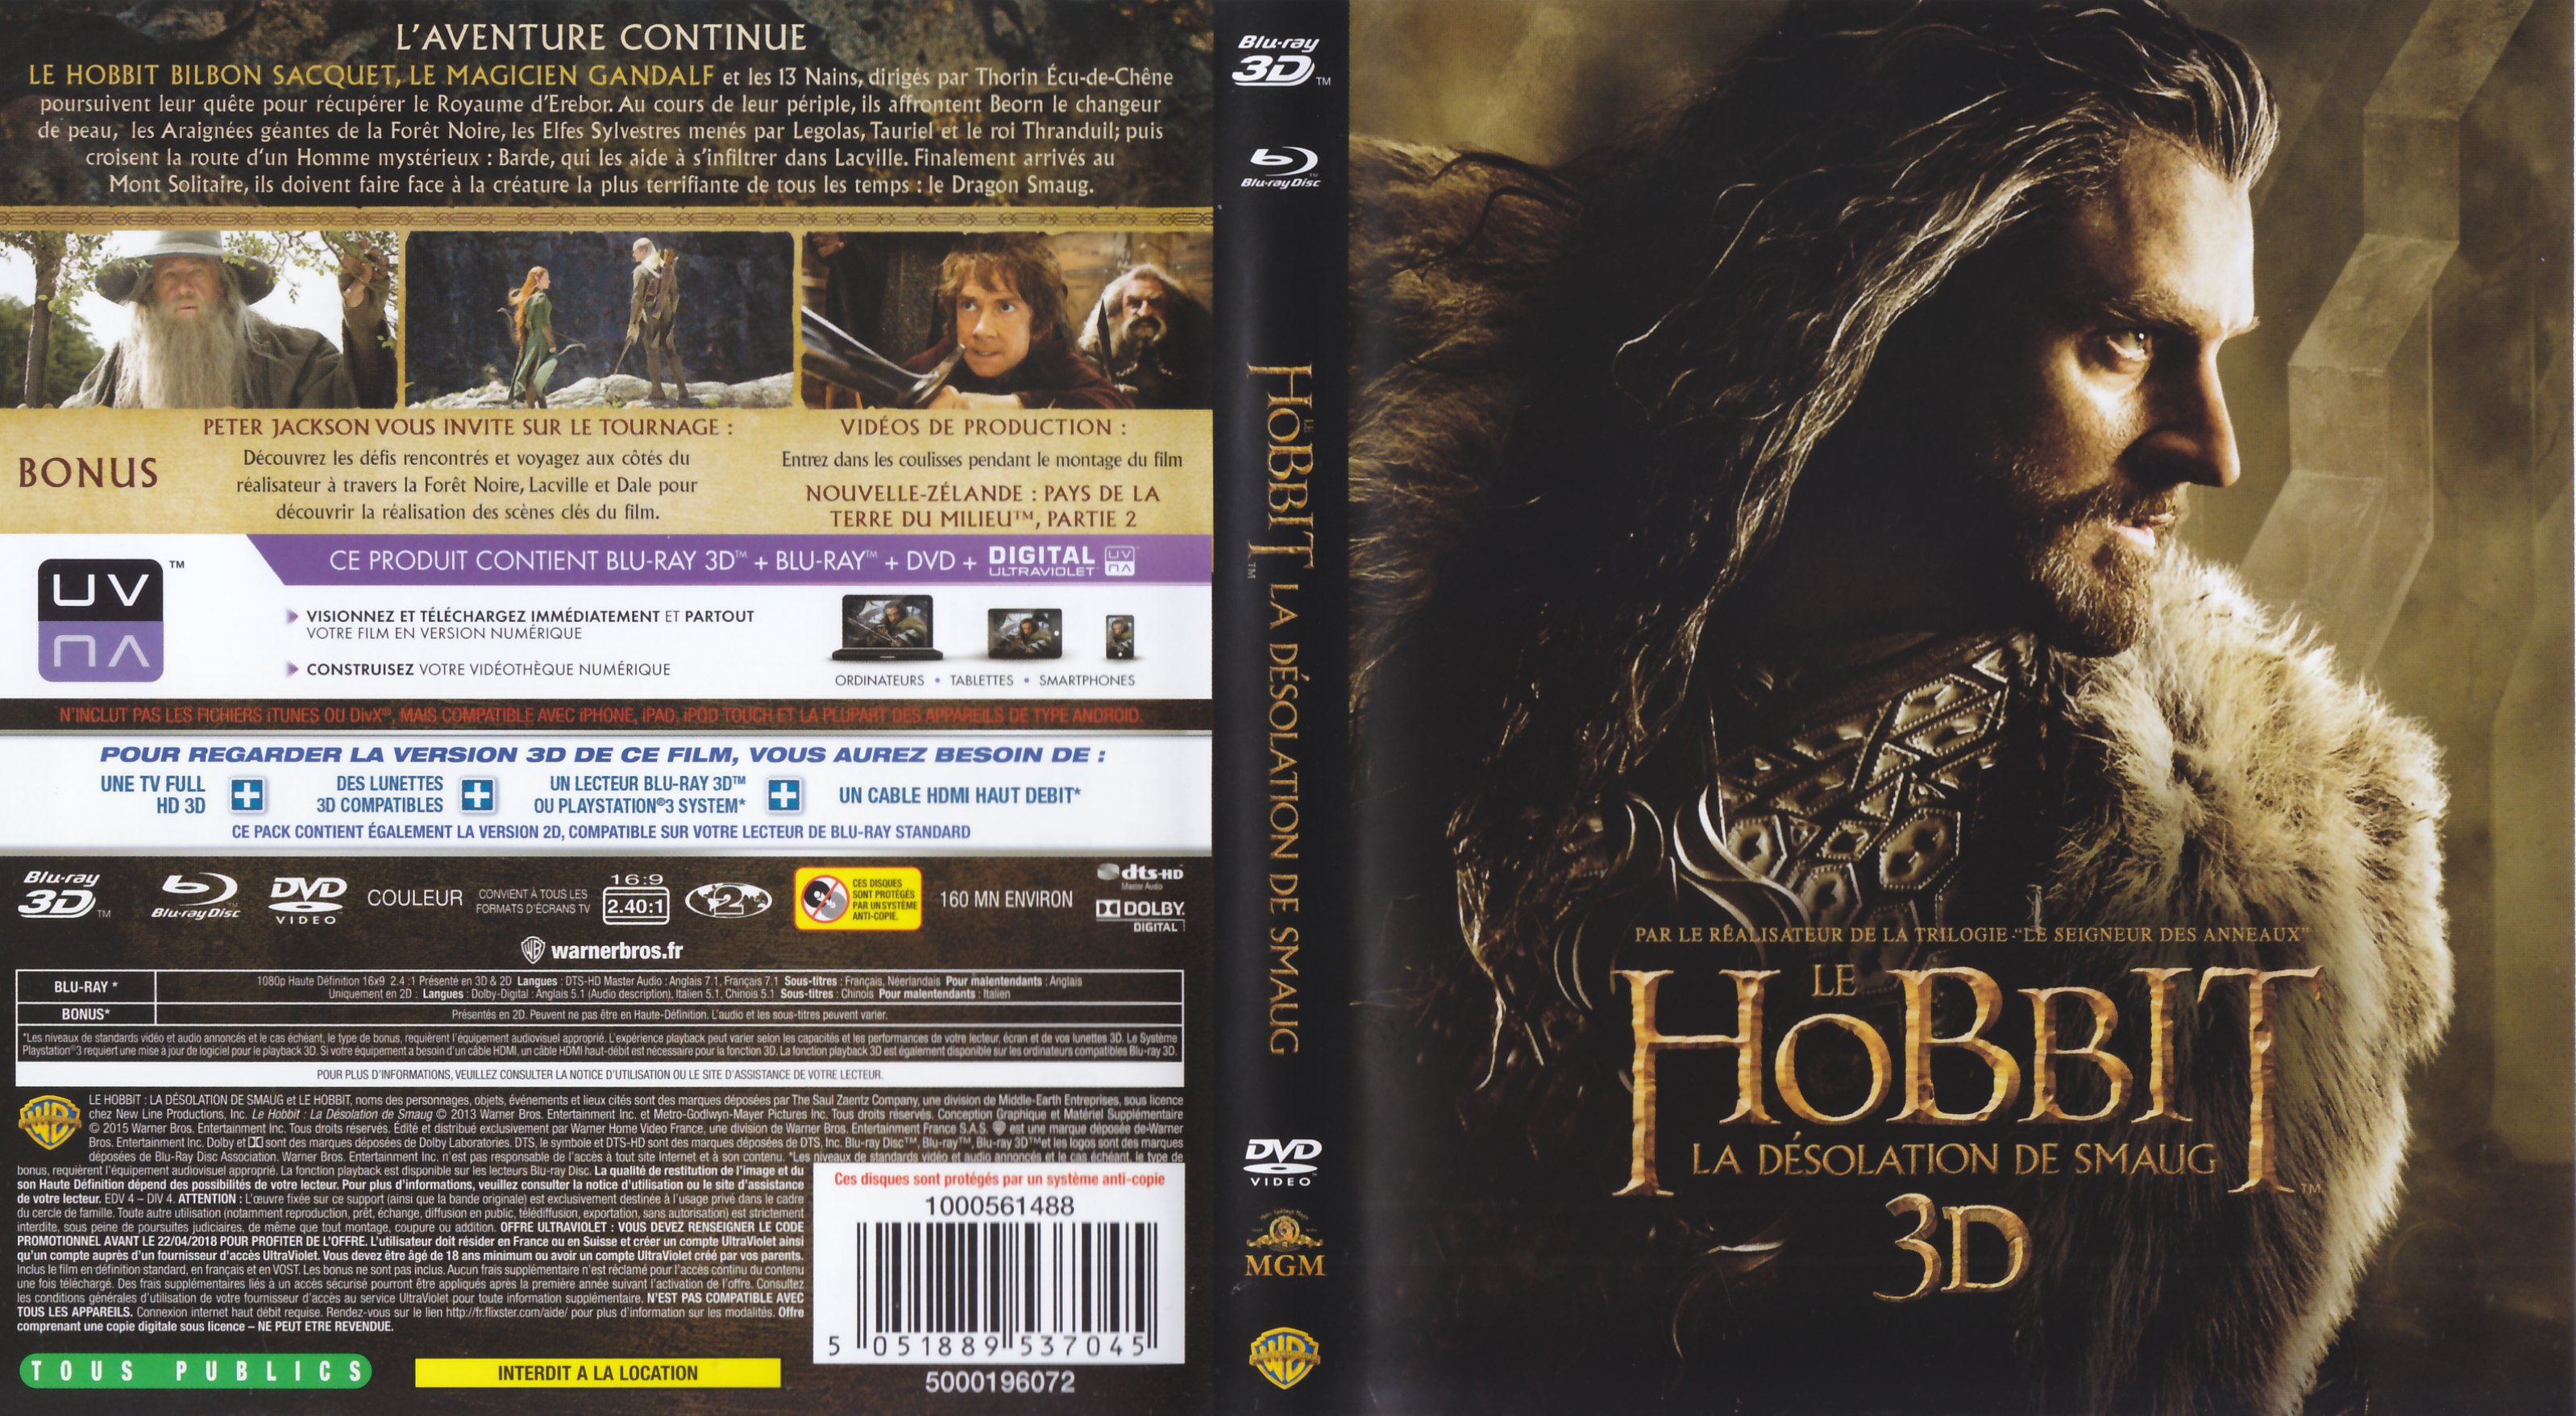 Jaquette DVD Le Hobbit la Dsolation de Smaug 3D (BLU-RAY) v2